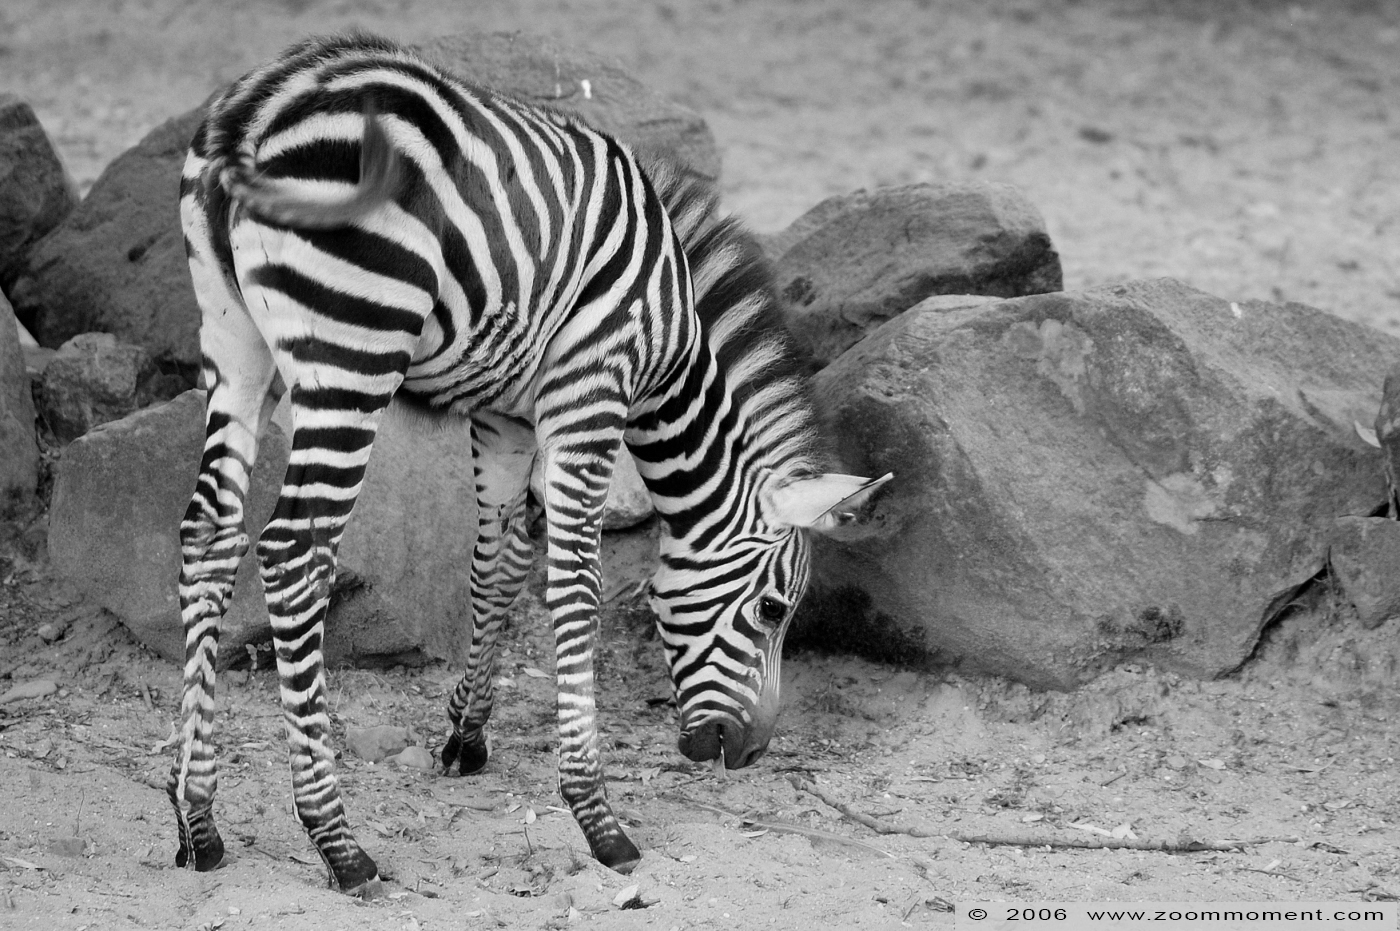 Grant or Böhm zebra  ( Equus quagga boehmi )
Trefwoorden: Aachen Aken zoo Grant&#039;s zebra Equus quagga boehmi Grant zebra Böhm